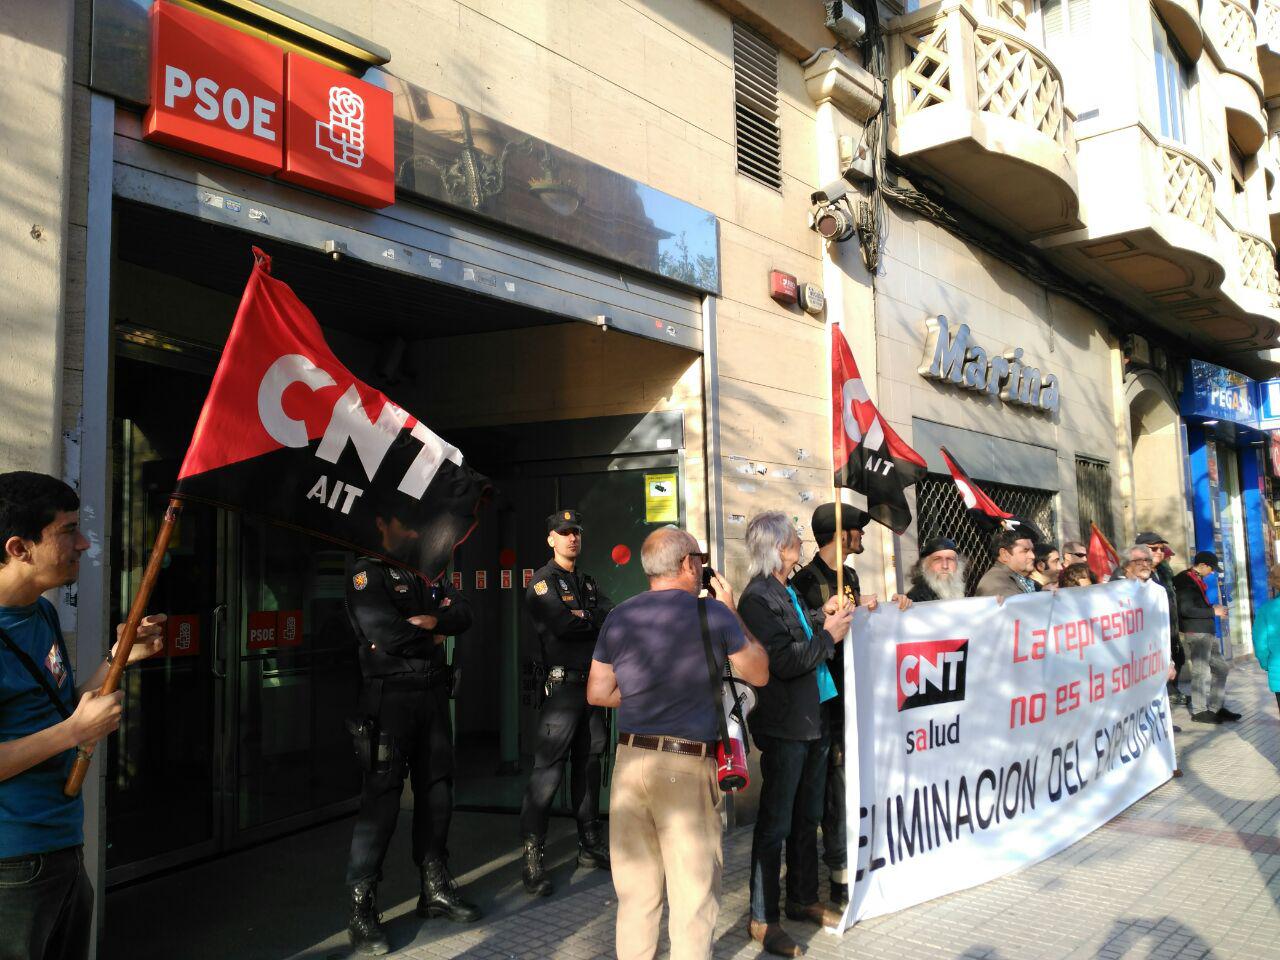 [CNT-SALUD] Crónica concentración ante la sede del PSOE